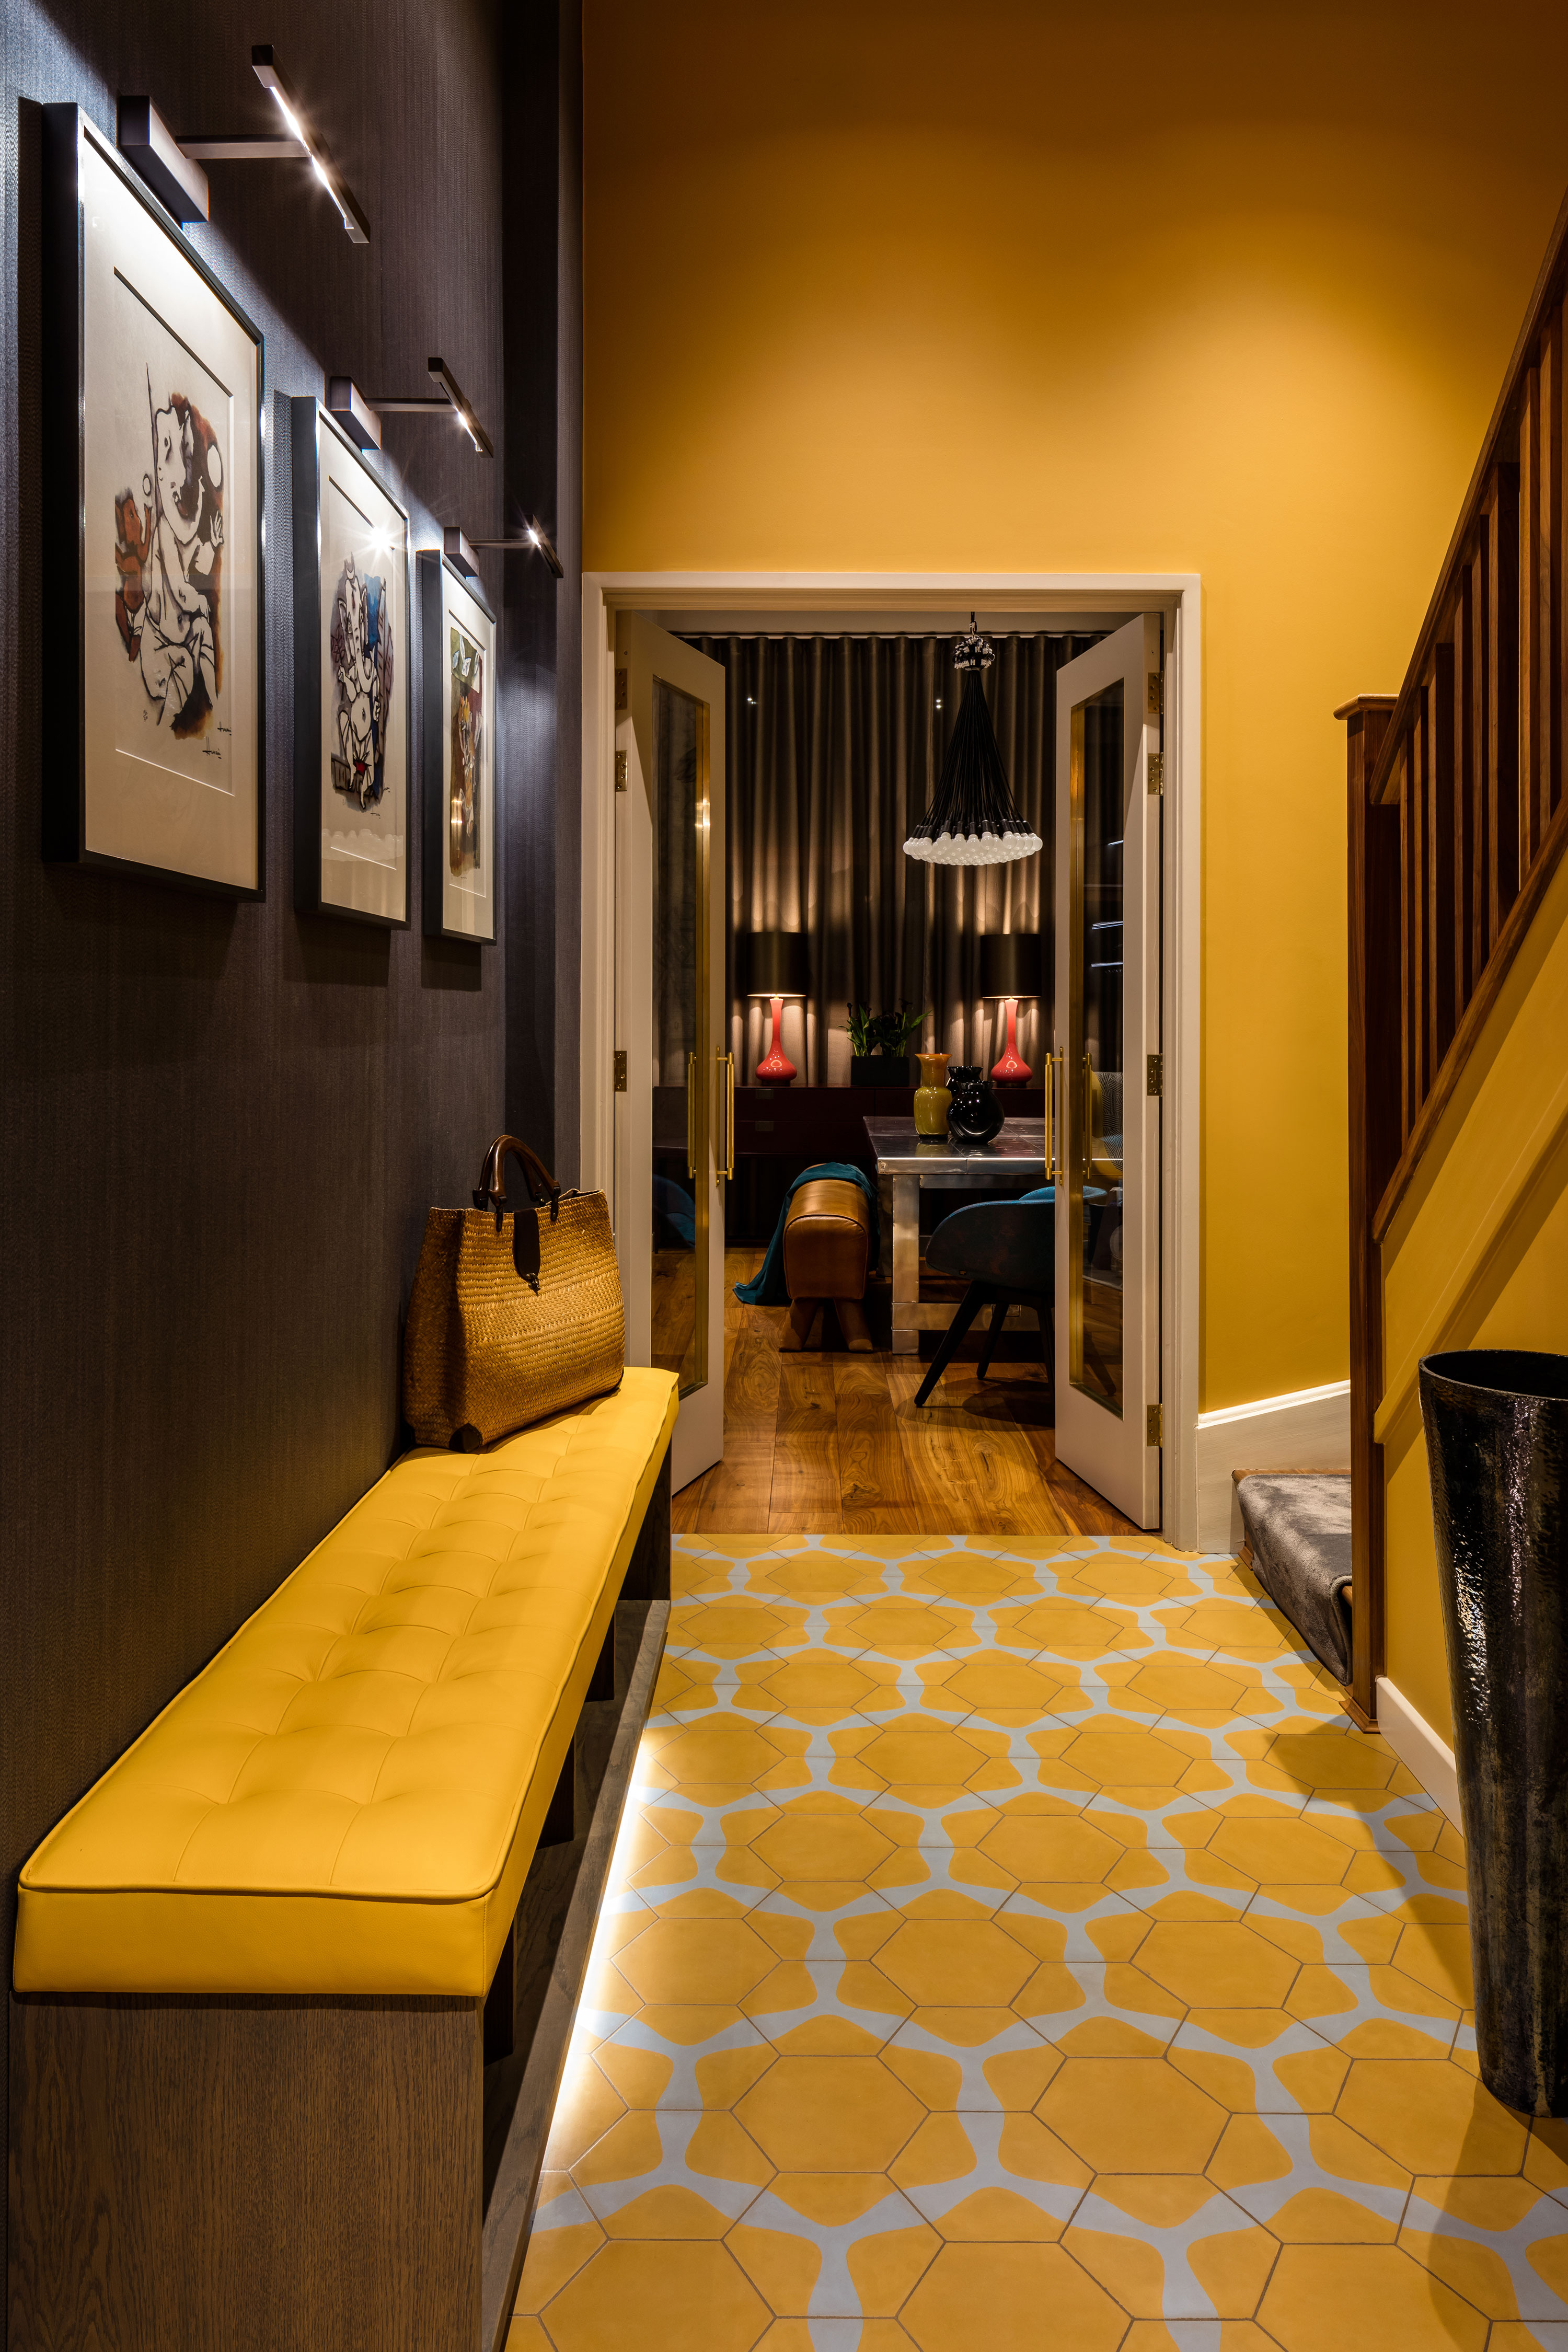 Hallway, yellow walls & flooring